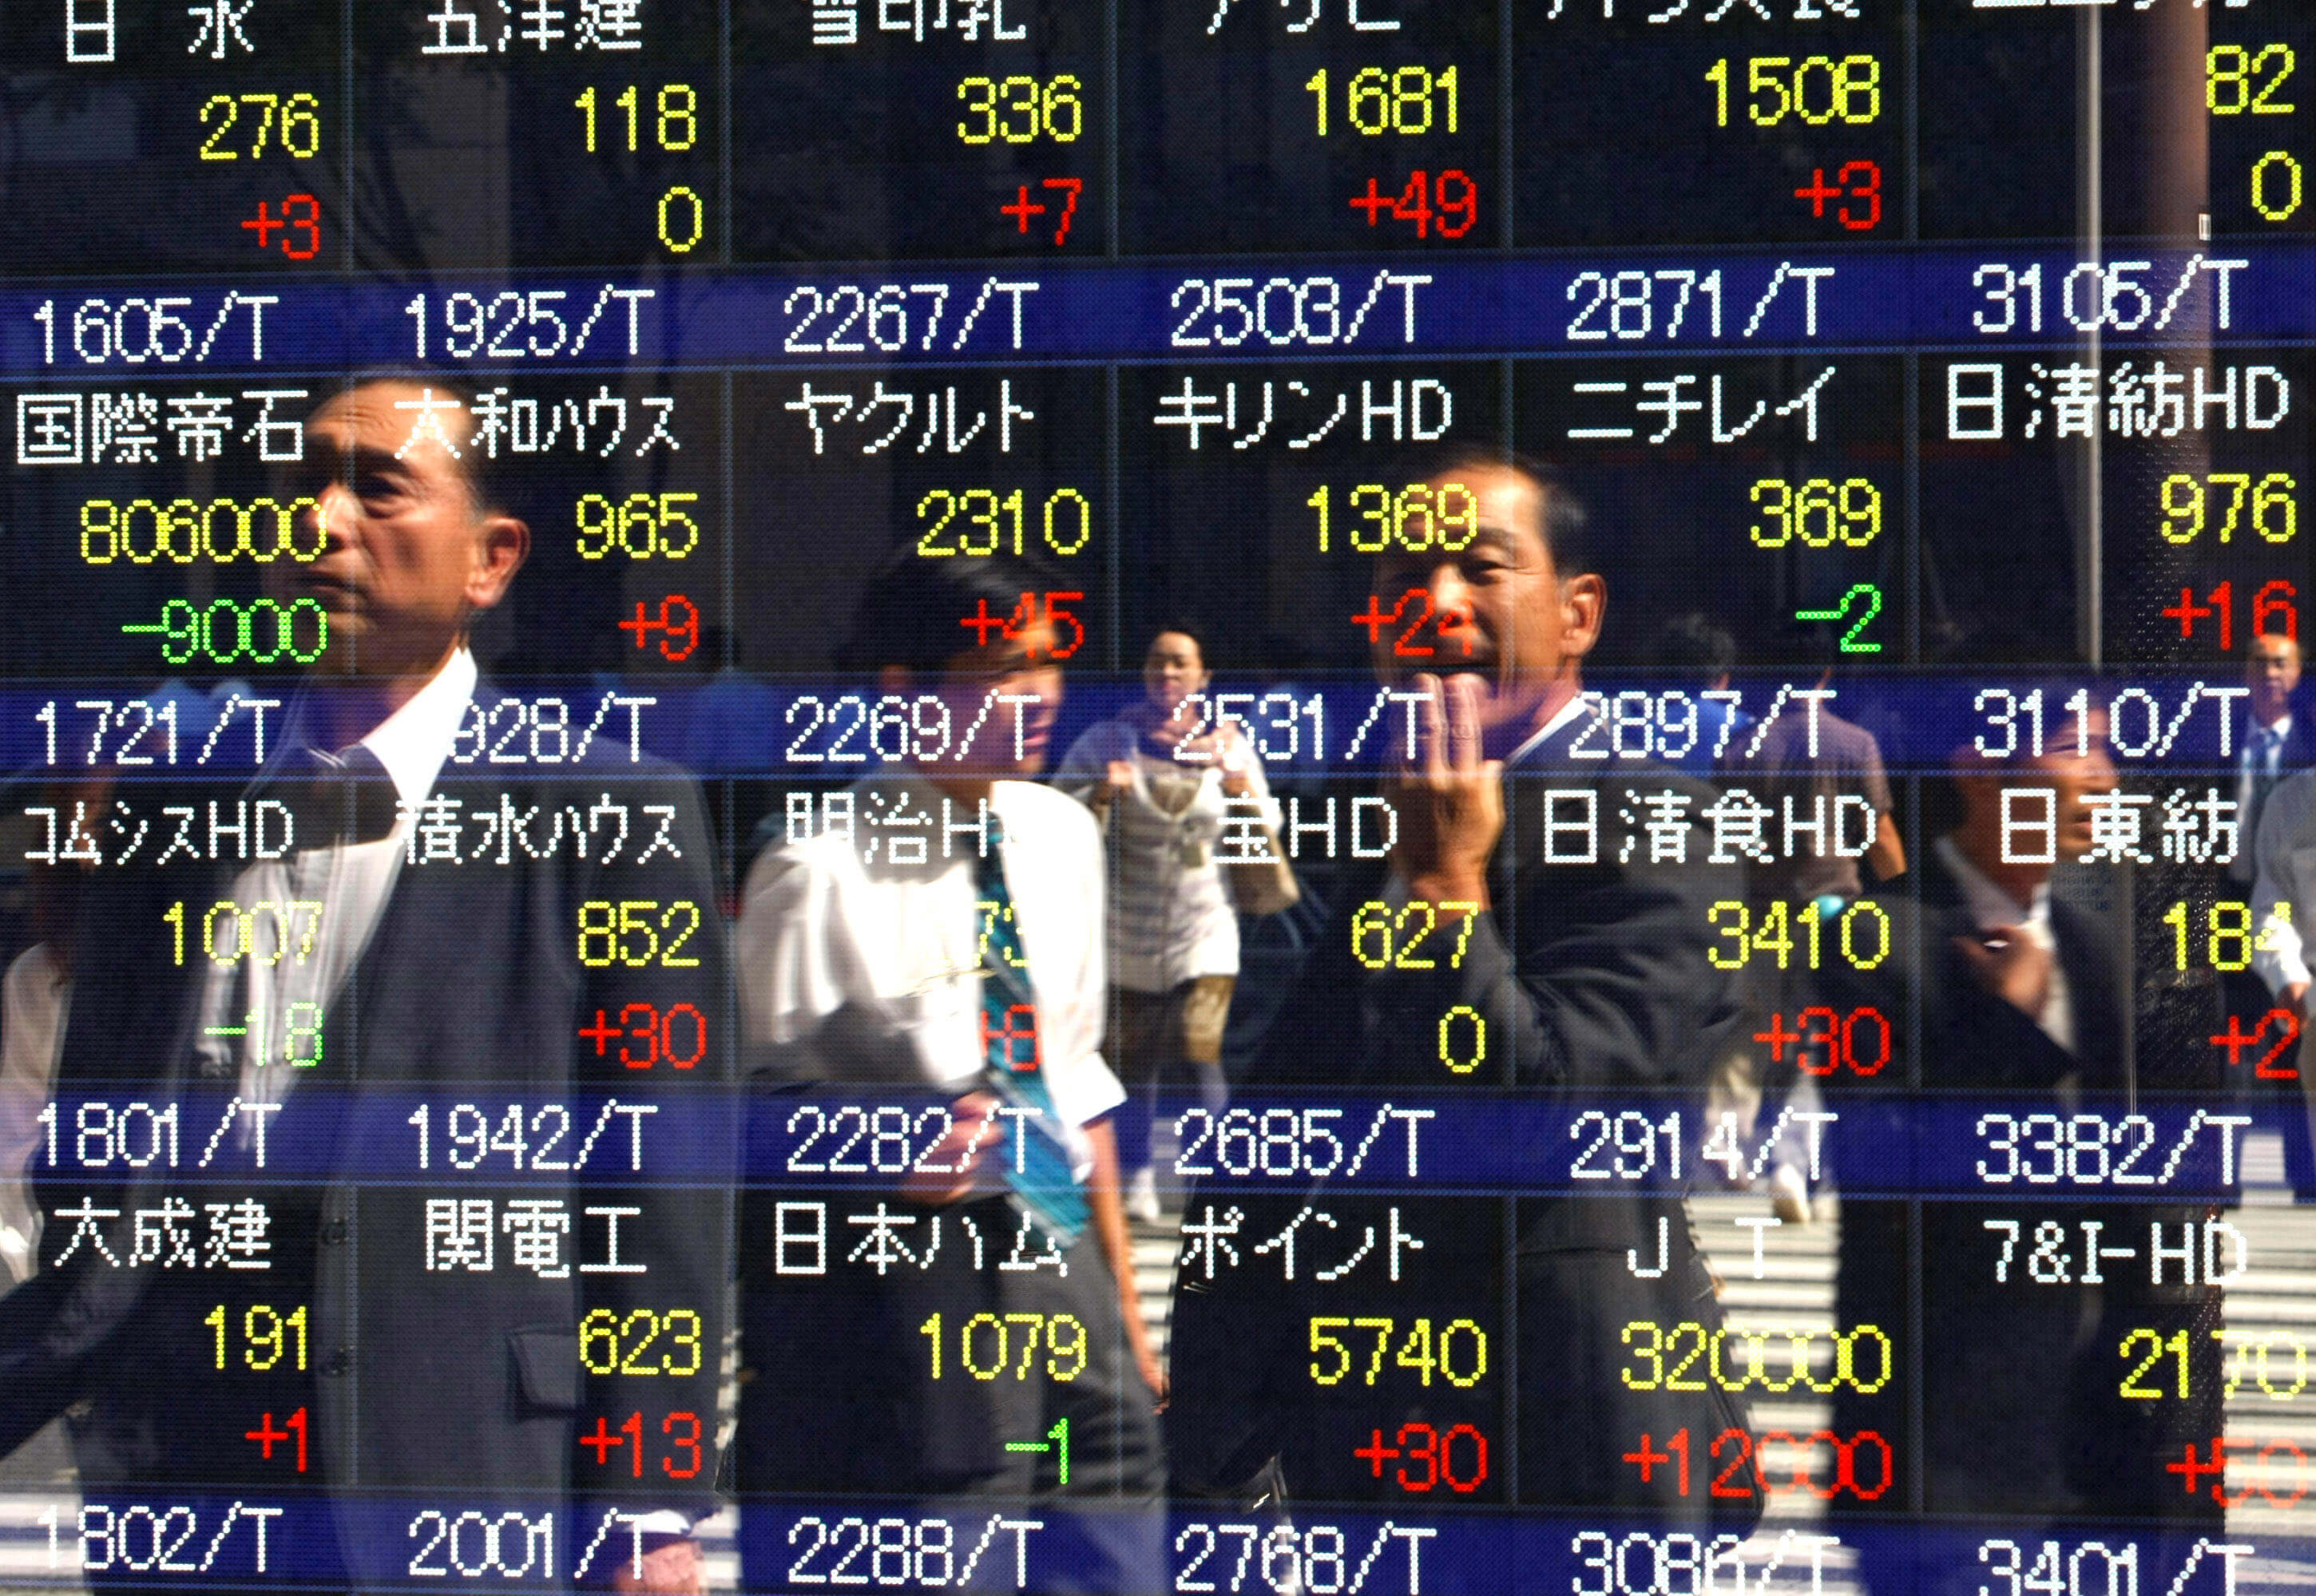 Bolsa de Tokio en racha alcista, Nikkei a máximo en meses